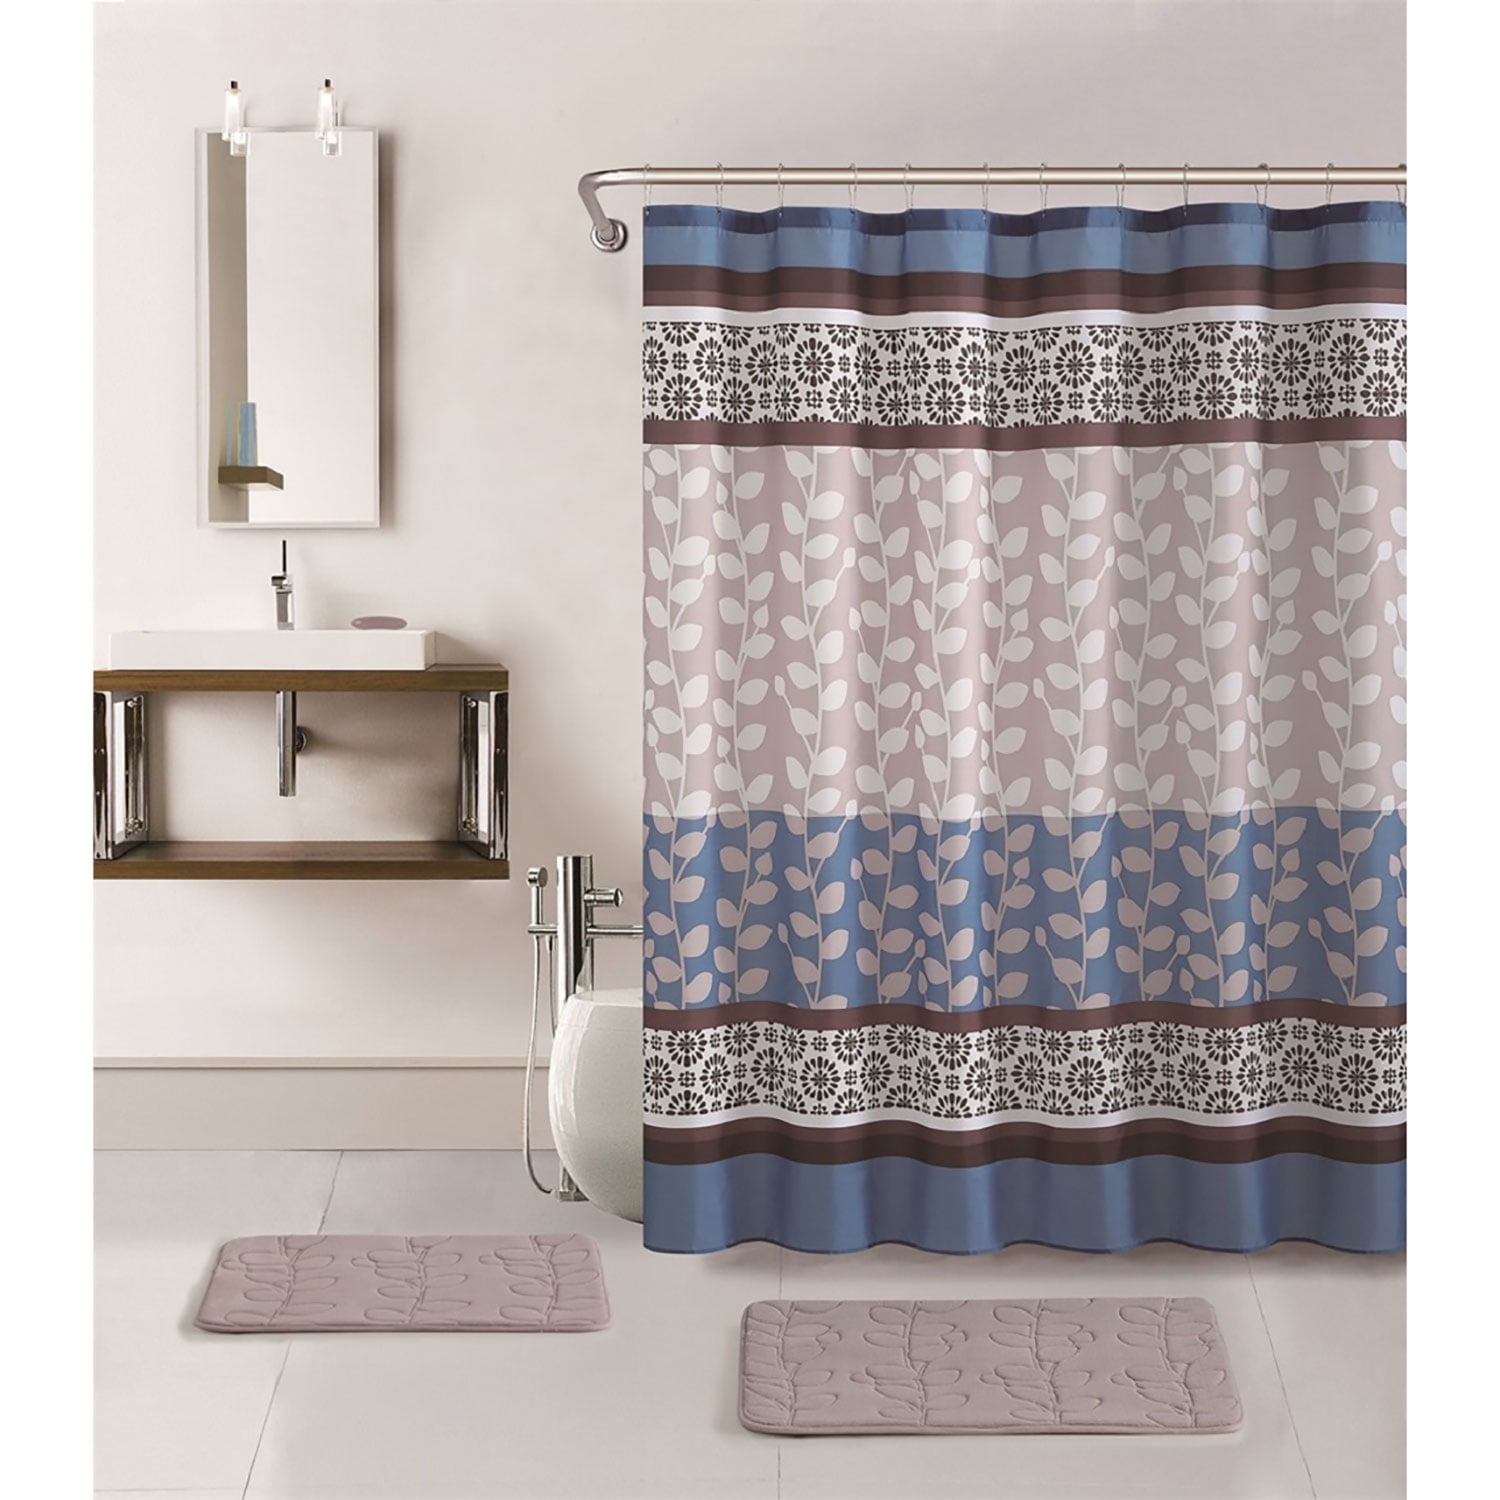 Details about   San Francisco 49ers 4PCS Bathroom Rug Shower Curtain Bath Mat Toilet Lid Cover 